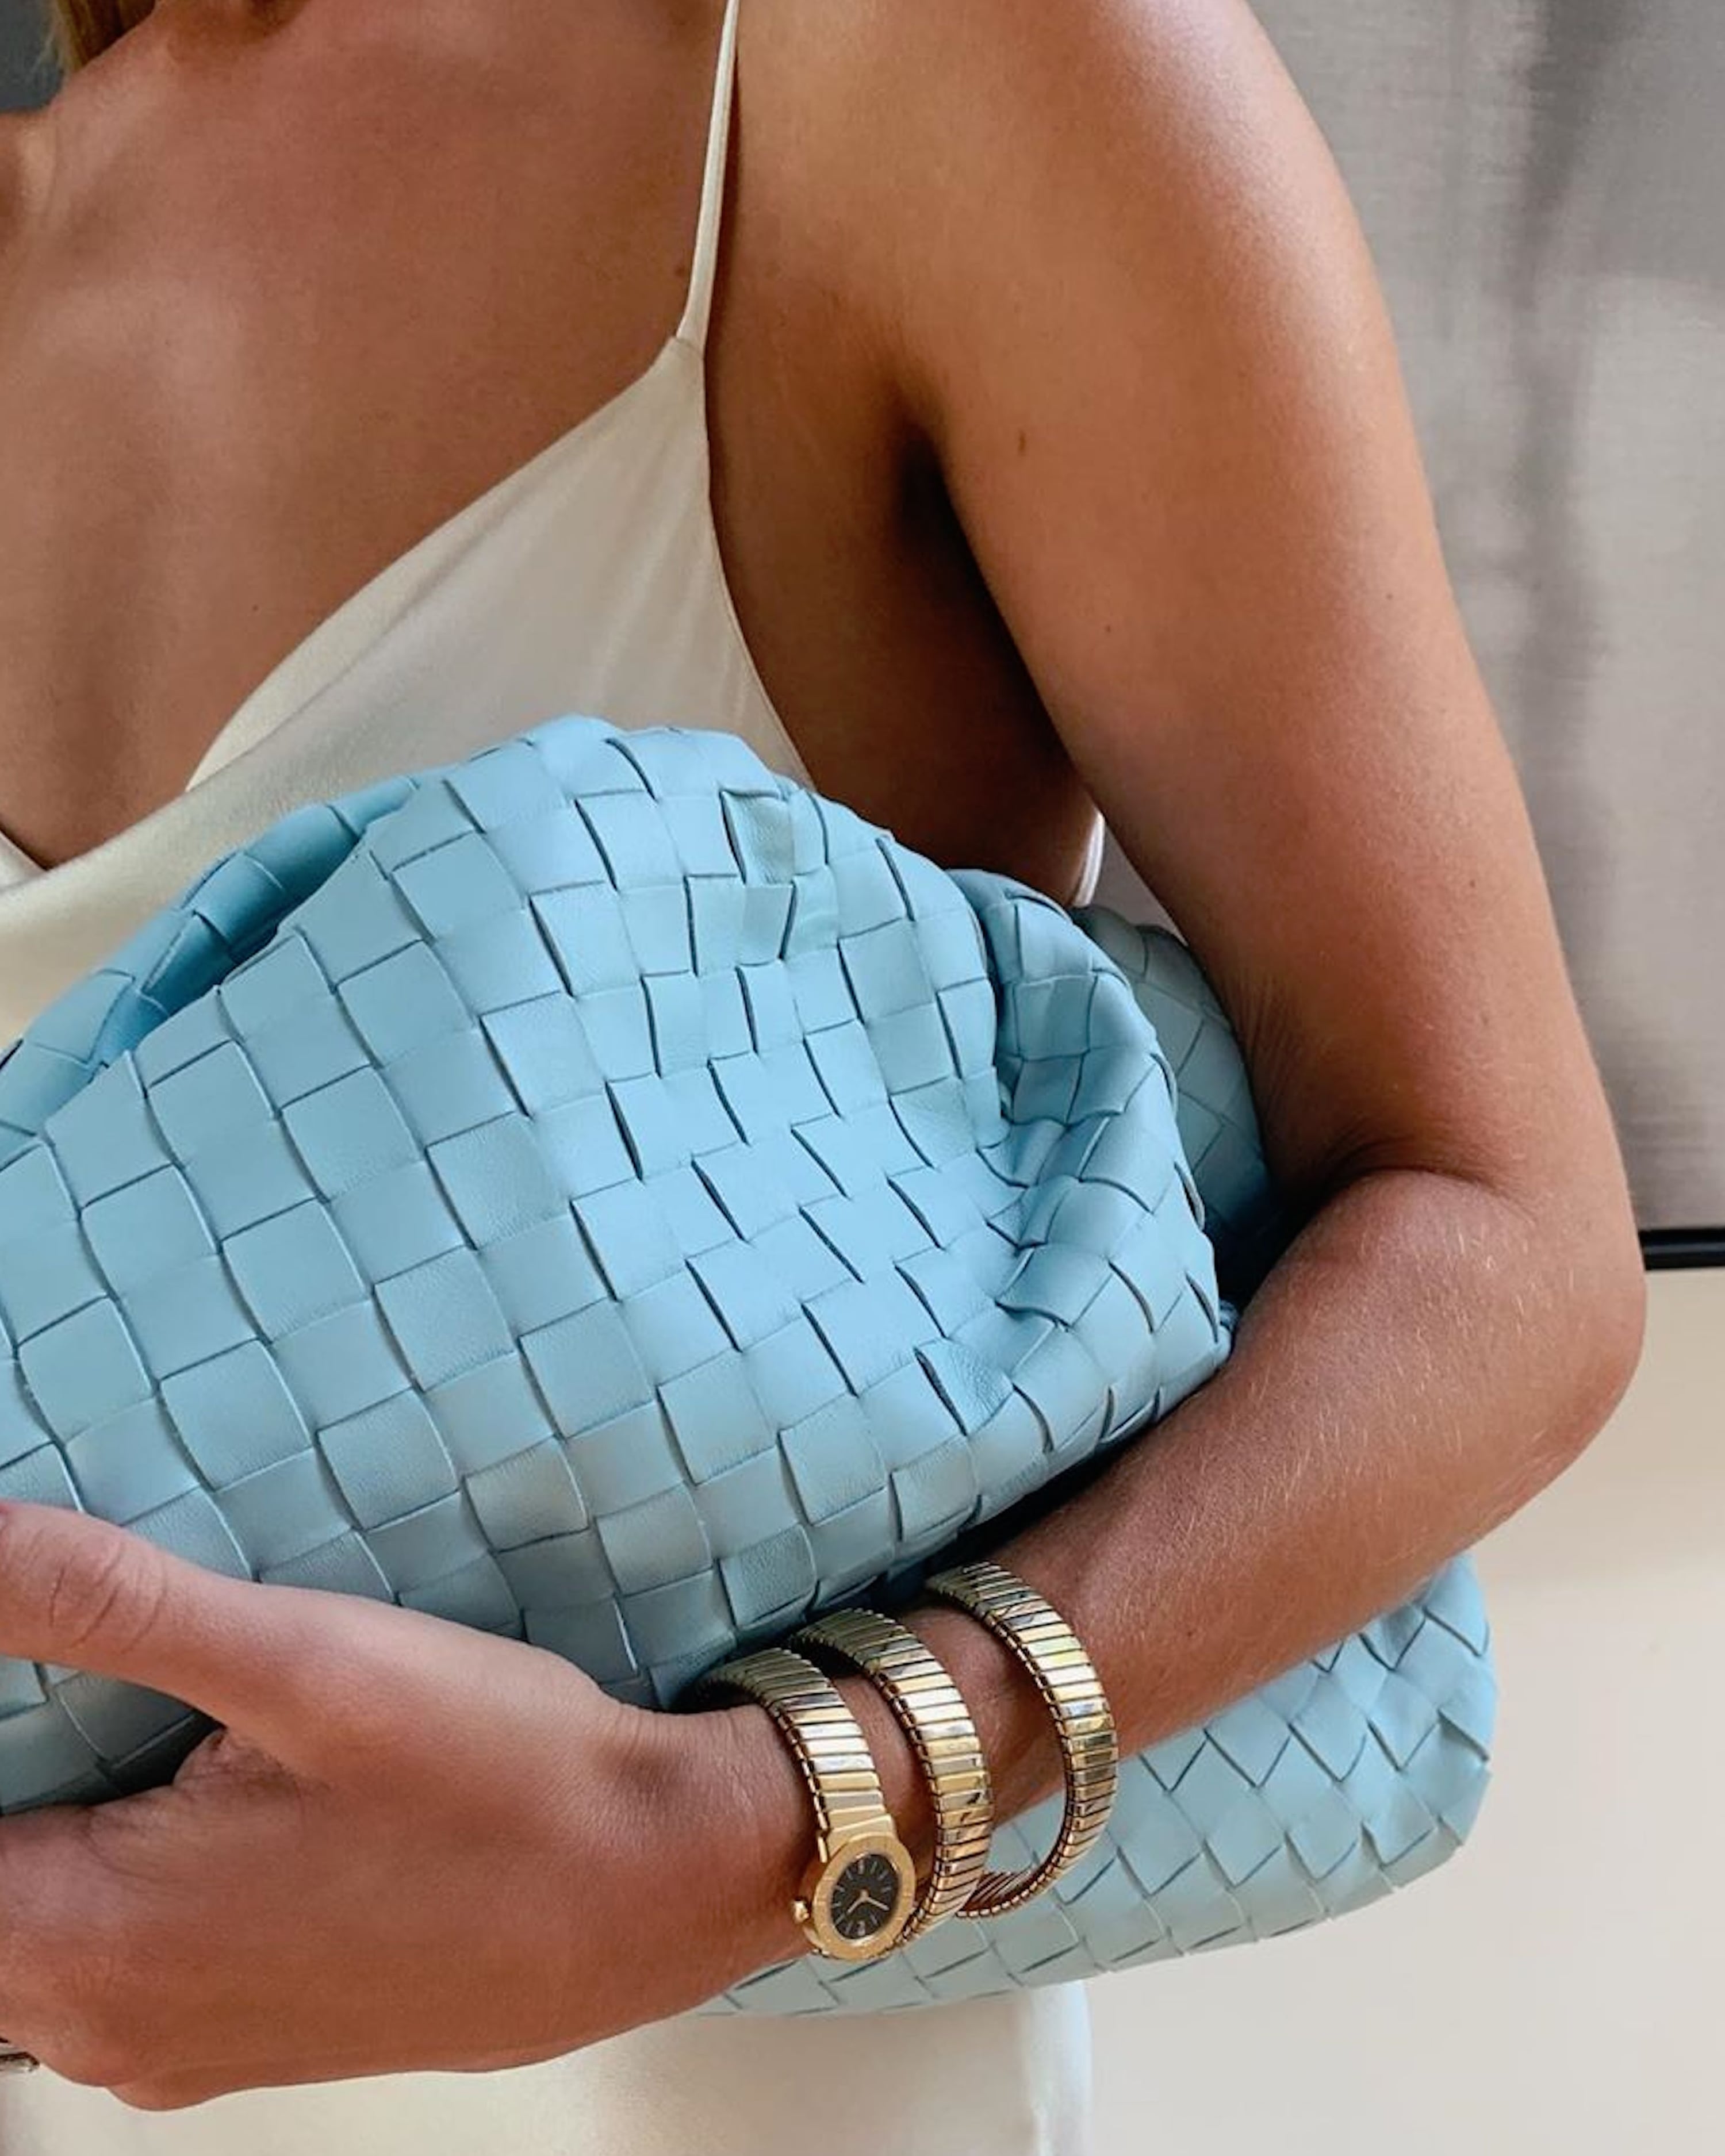 The Big, Oversized Handbag Trend Is Taking Over Instagram